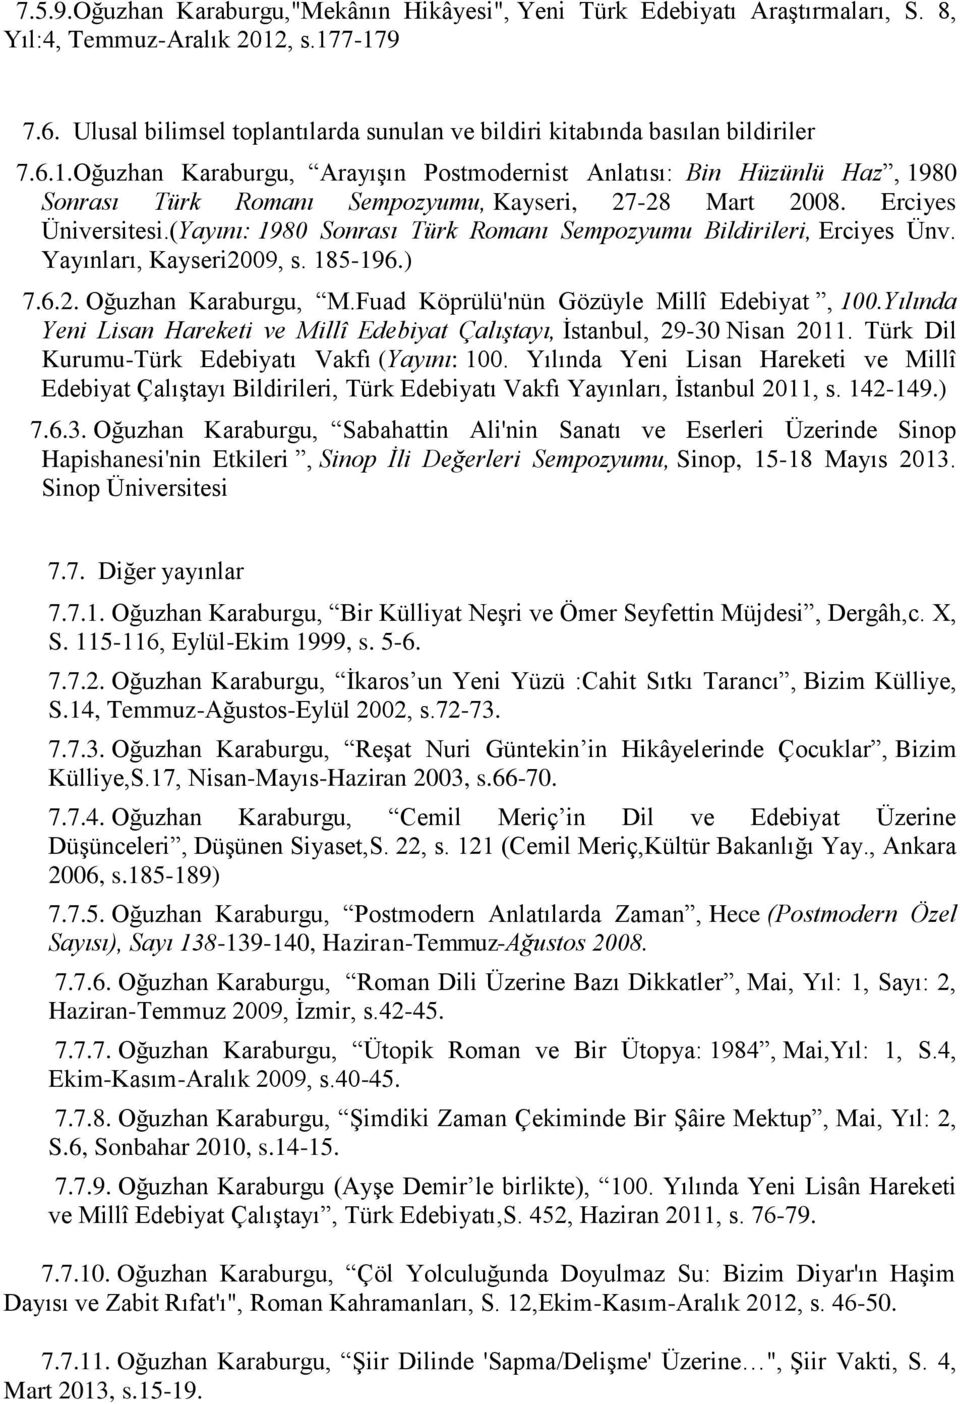 Oğuzhan Karaburgu, Arayışın Postmodernist Anlatısı: Bin Hüzünlü Haz, 1980 Sonrası Türk Romanı Sempozyumu, Kayseri, 27-28 Mart 2008. Erciyes Üniversitesi.